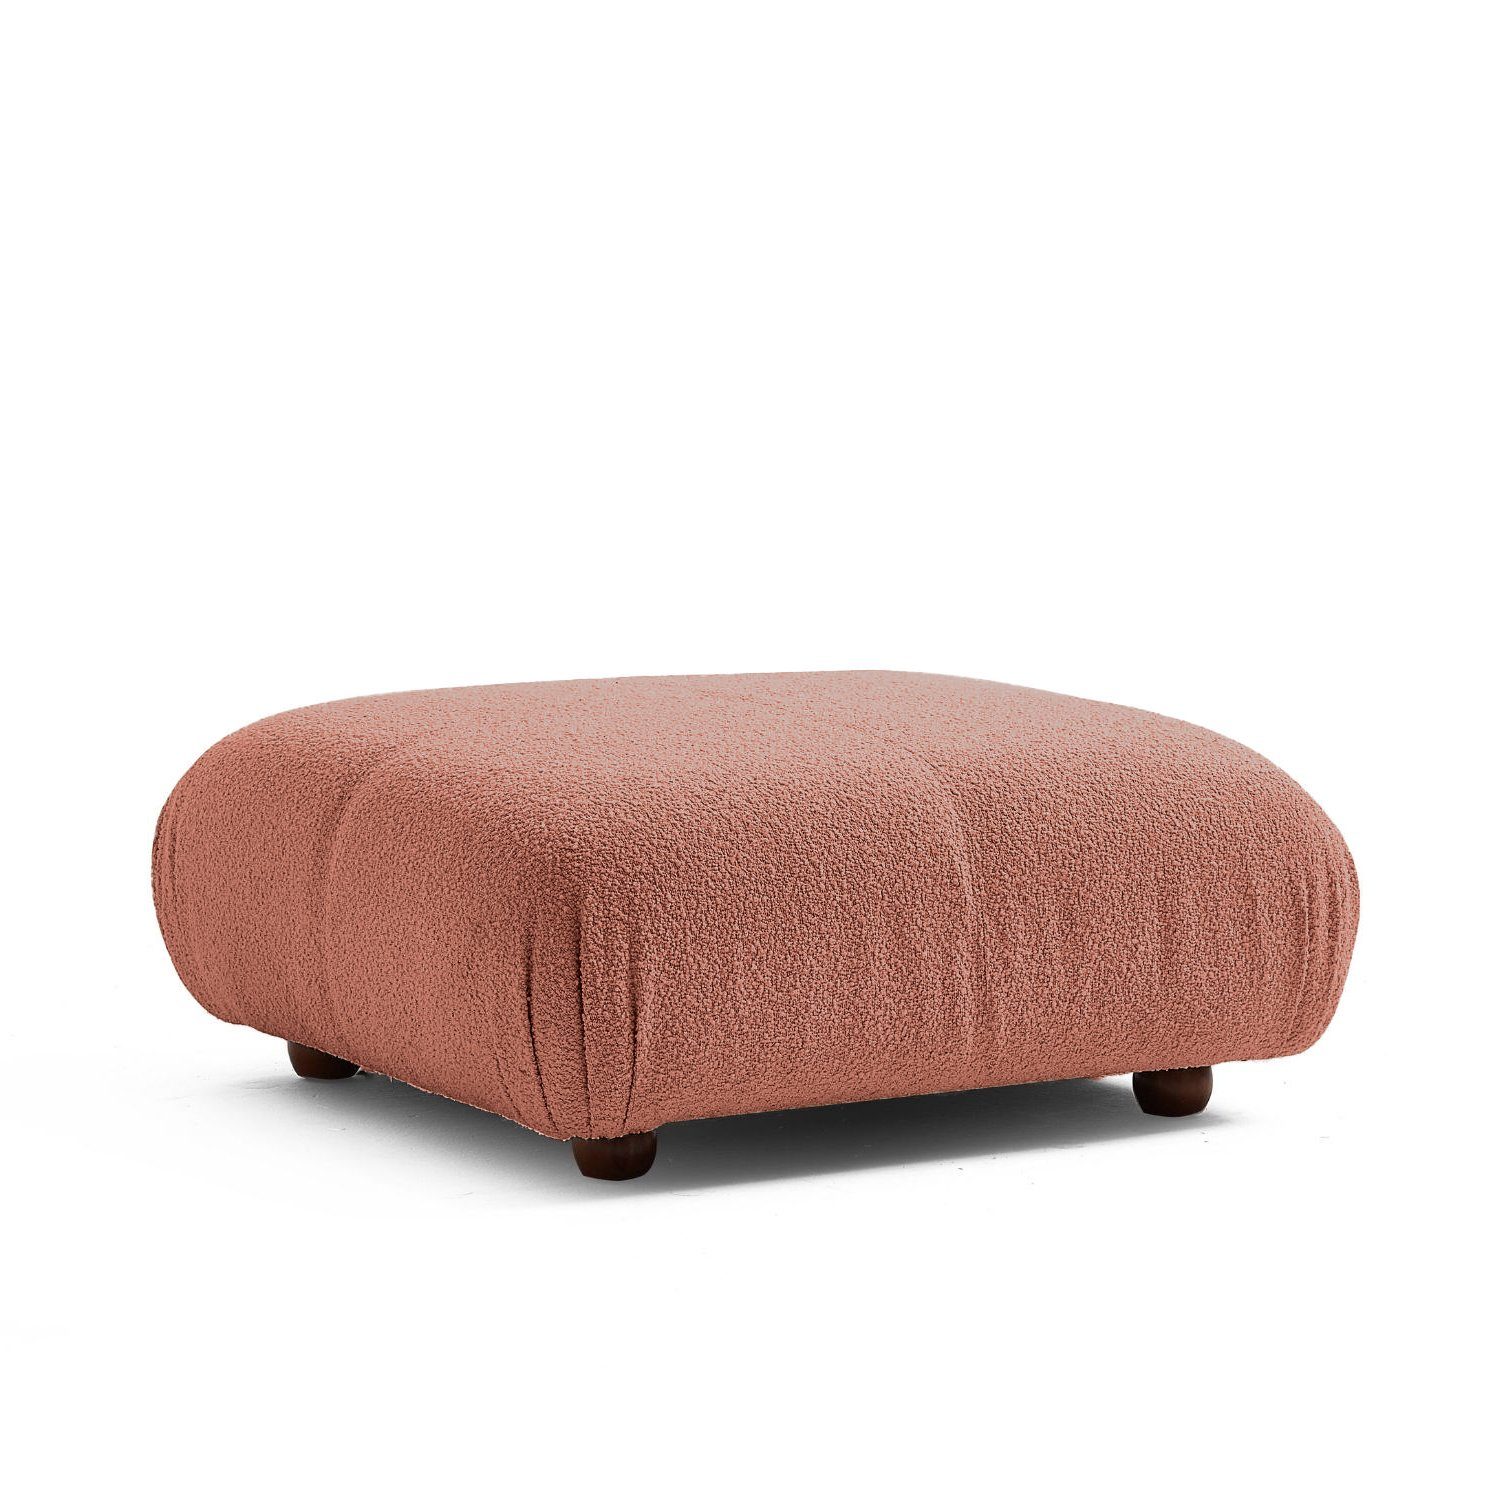 Touch me Sofa Knuffiges Sitzmöbel neueste Generation aus Komfortschaum Dunkelbraun-Lieferung und Aufbau im Preis enthalten!